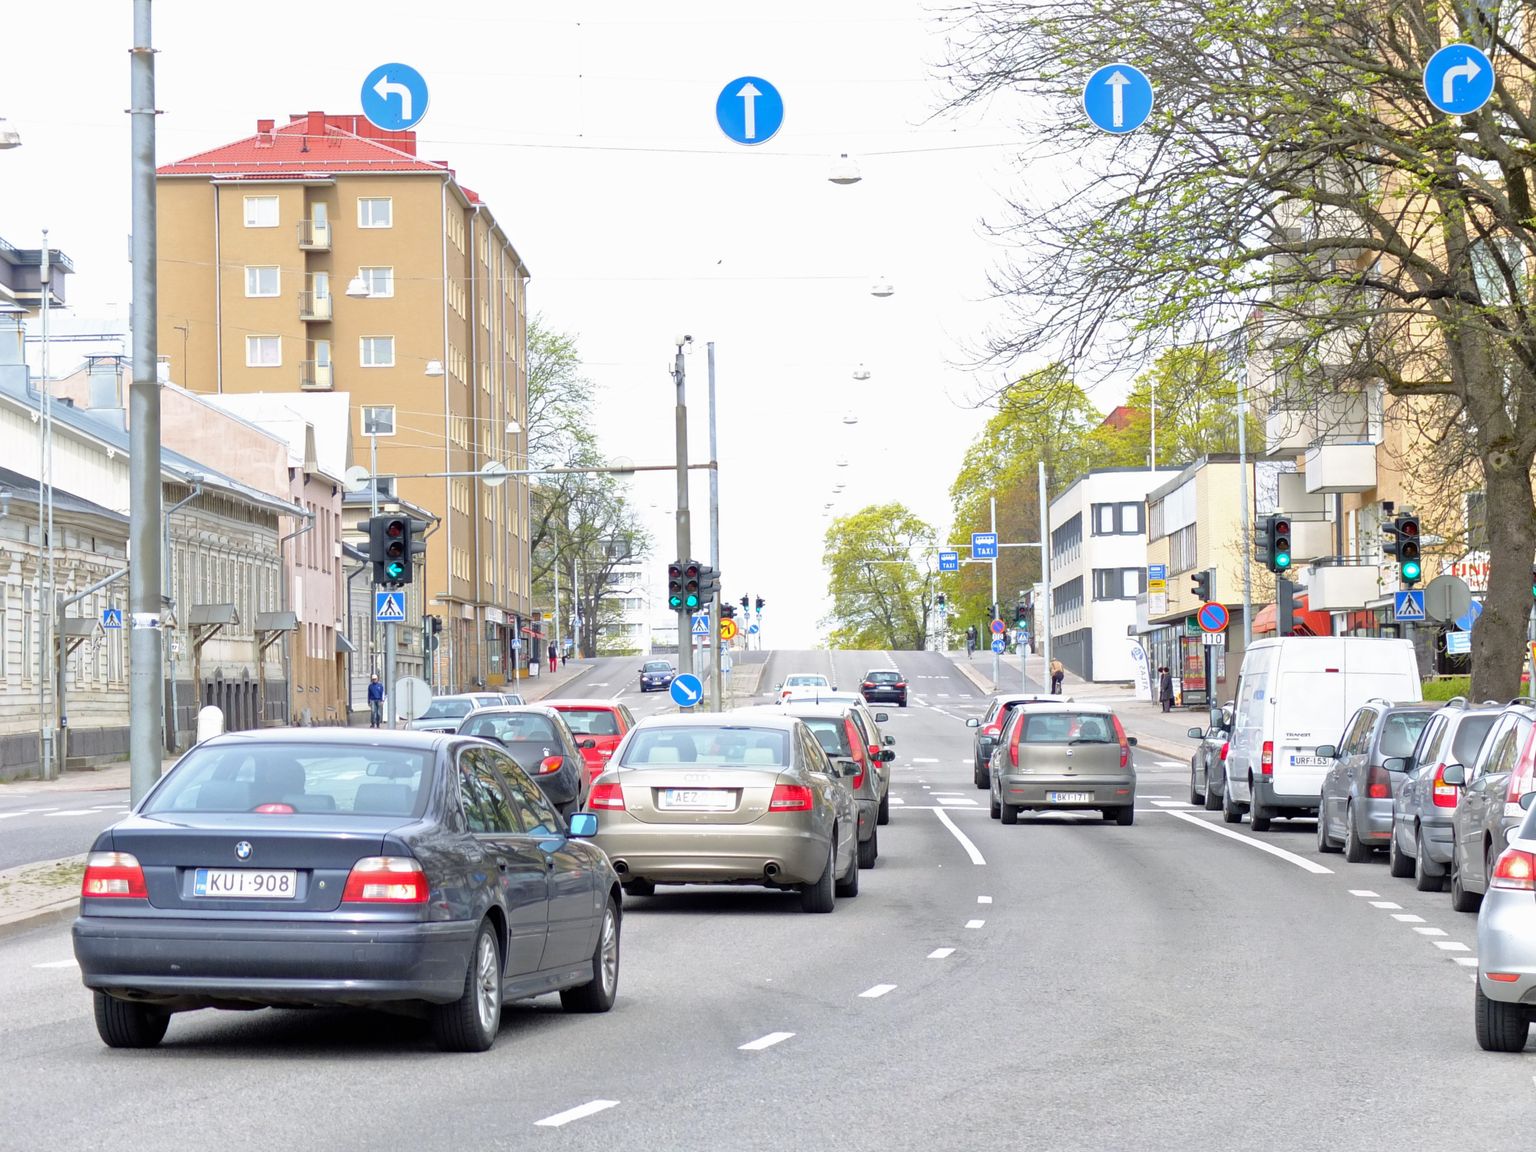 HÕRENEB: Vähemalt statistika andmetel peaks liiklustihedus Soome teedel olema vähenenud. Kas ka igapäevane kogemus seda kinnitab, on juba eraldi küsimus.